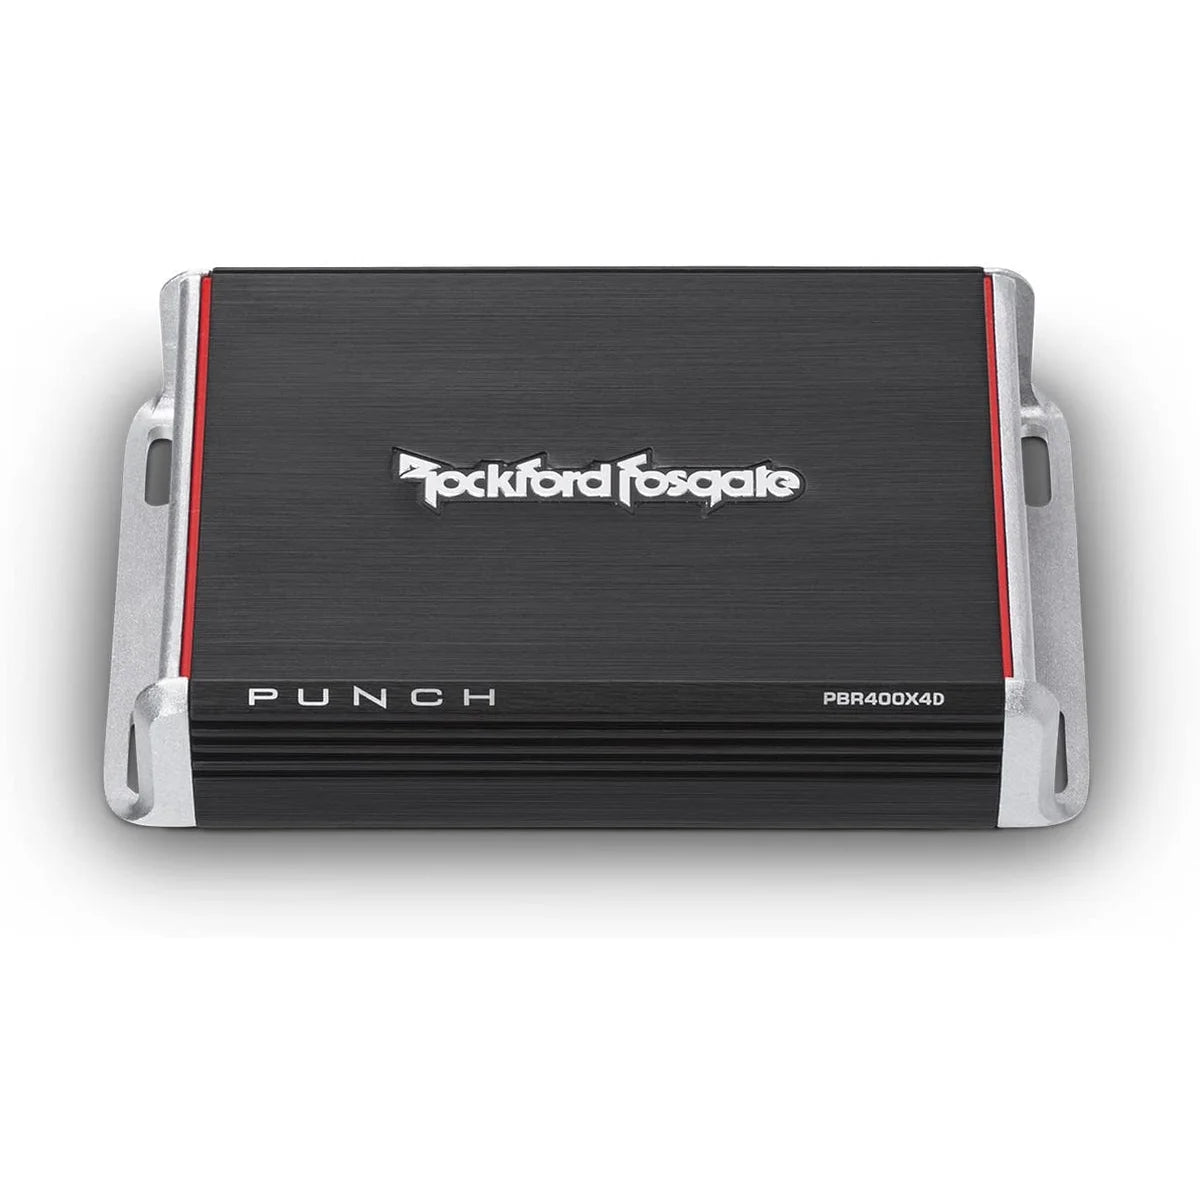 ROCKFORD FOSGATE Rockford Fosgate Verstärker PBR400x4D4-Kanal Punch 4-Kanal Verstärker